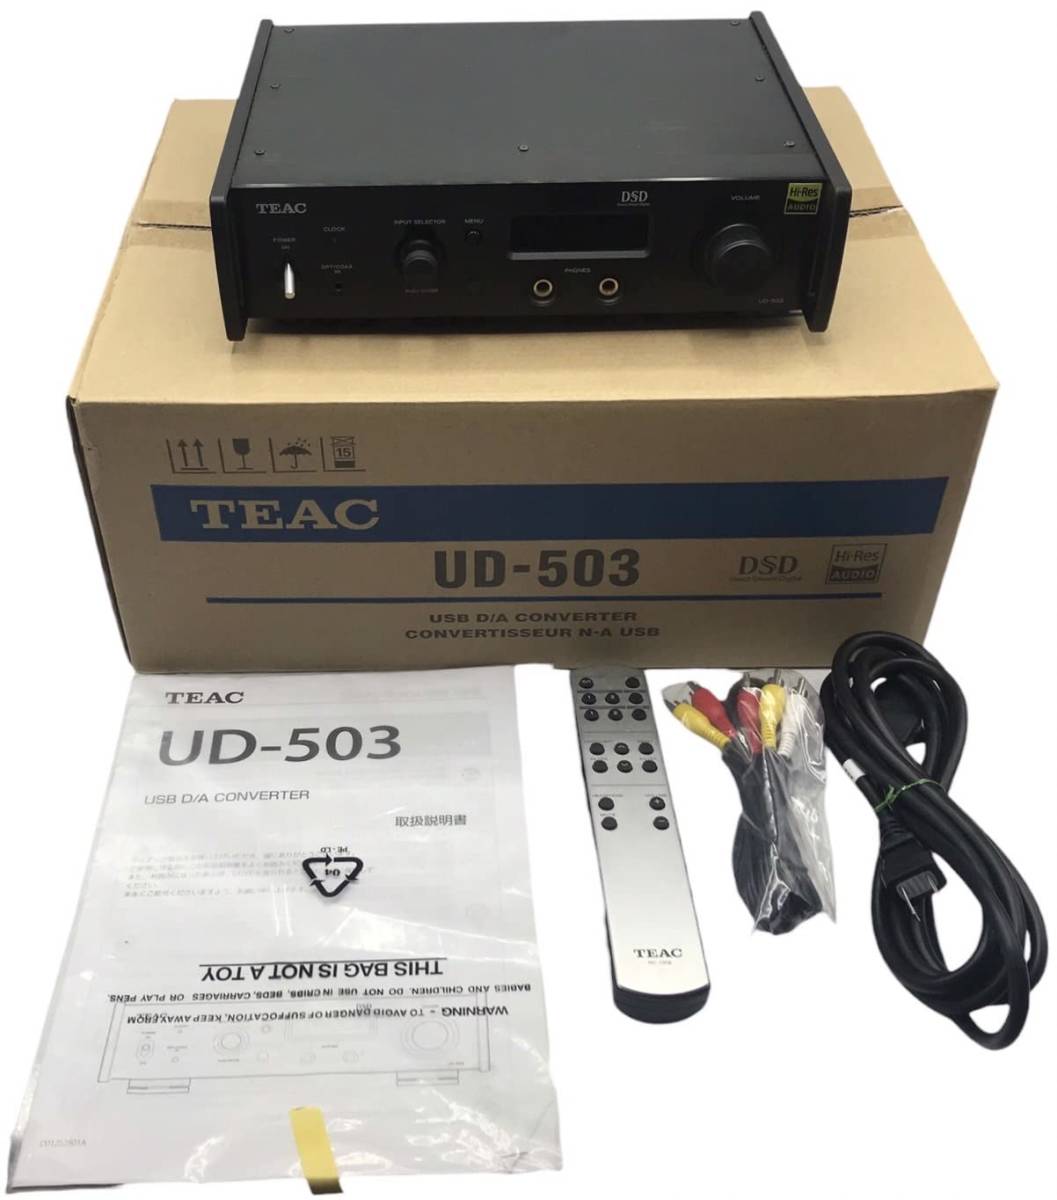 002776)ティアック デュアルモノーラルUSB-DAC/ヘッドホンアンプ Reference UD-503 (ブラック) UD-503-B  JChere雅虎拍卖代购